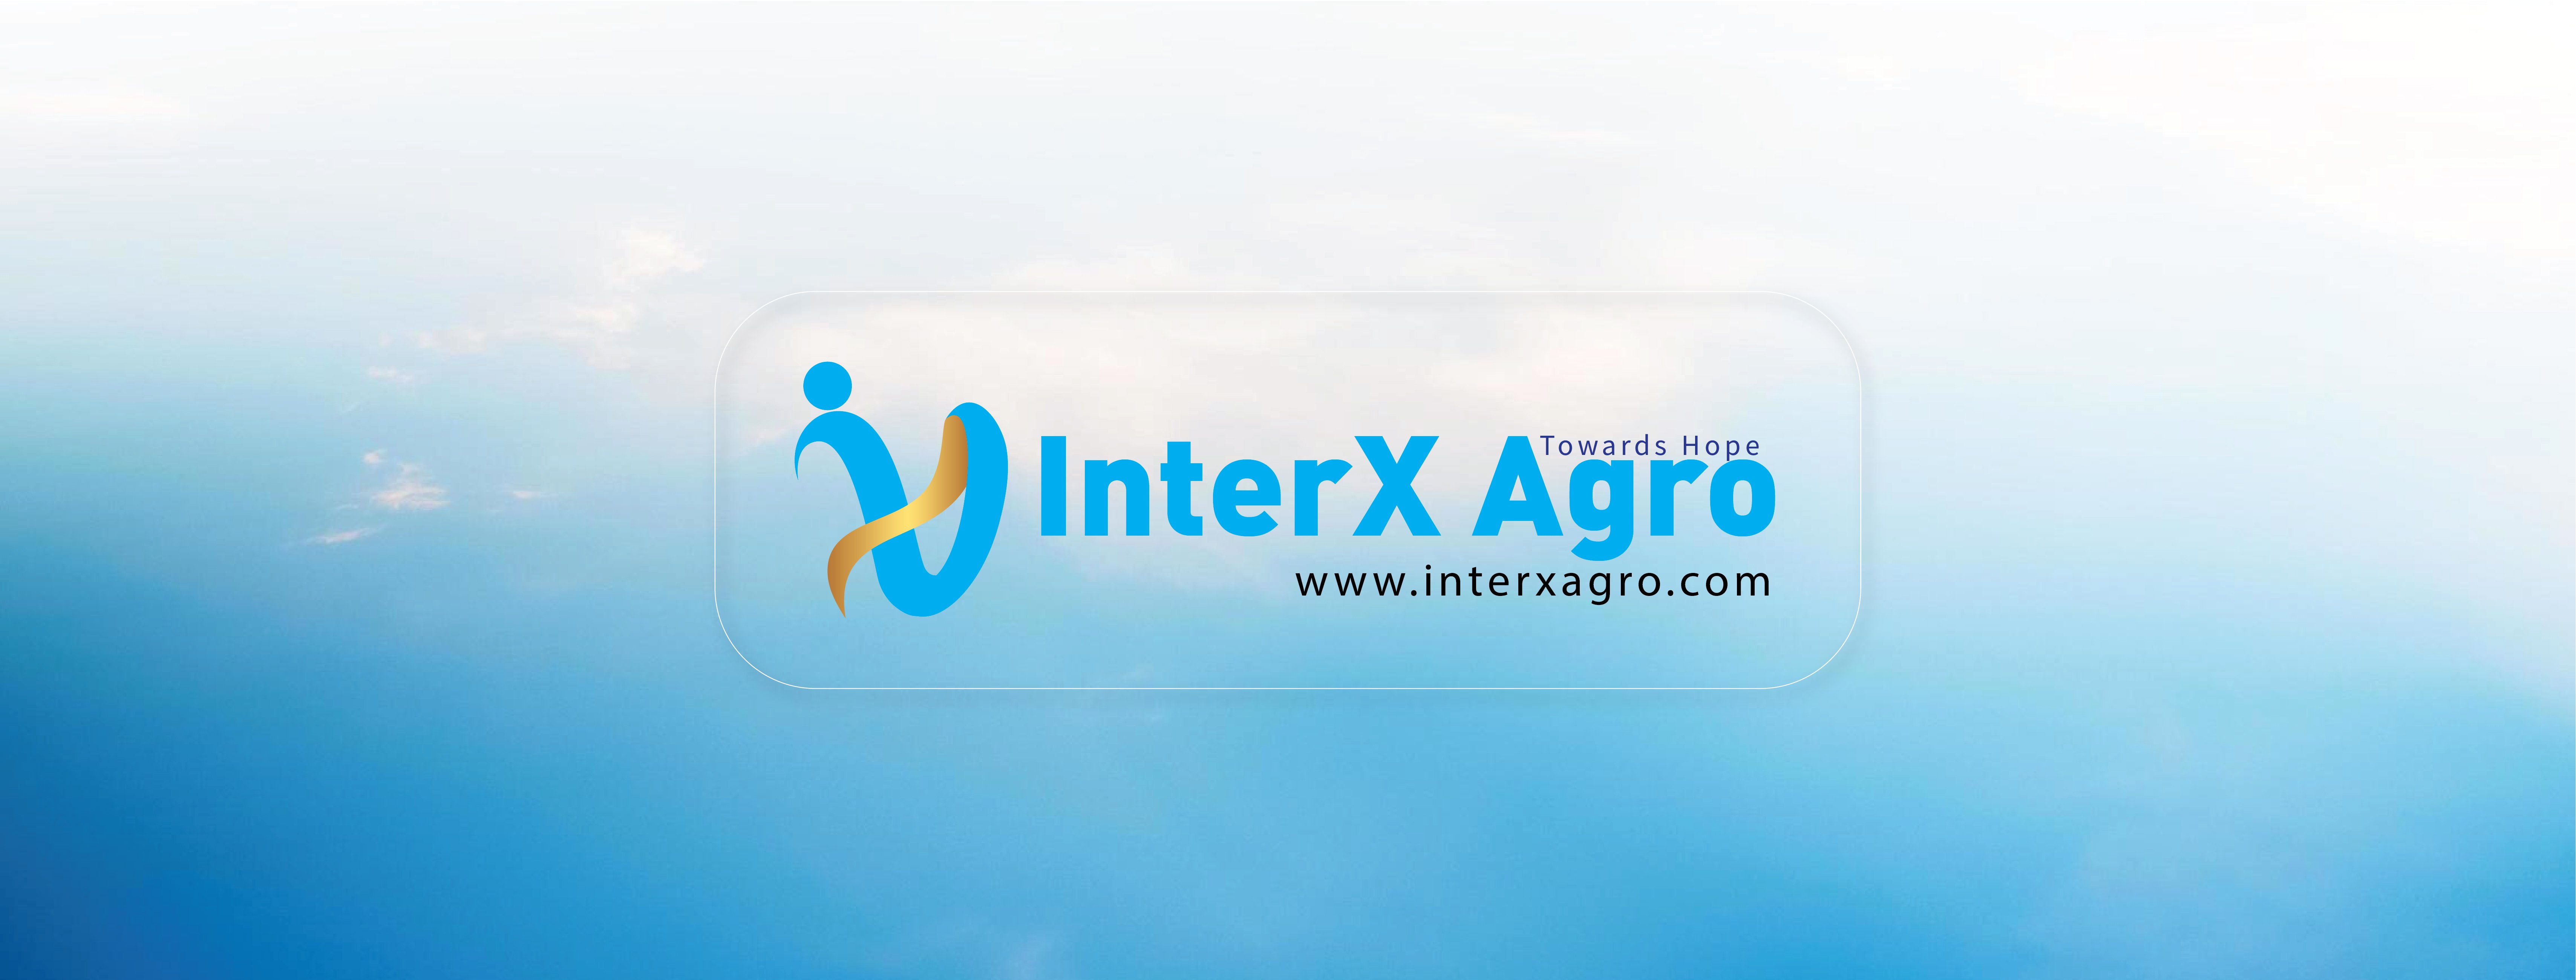 FB cover InterX Agro-01